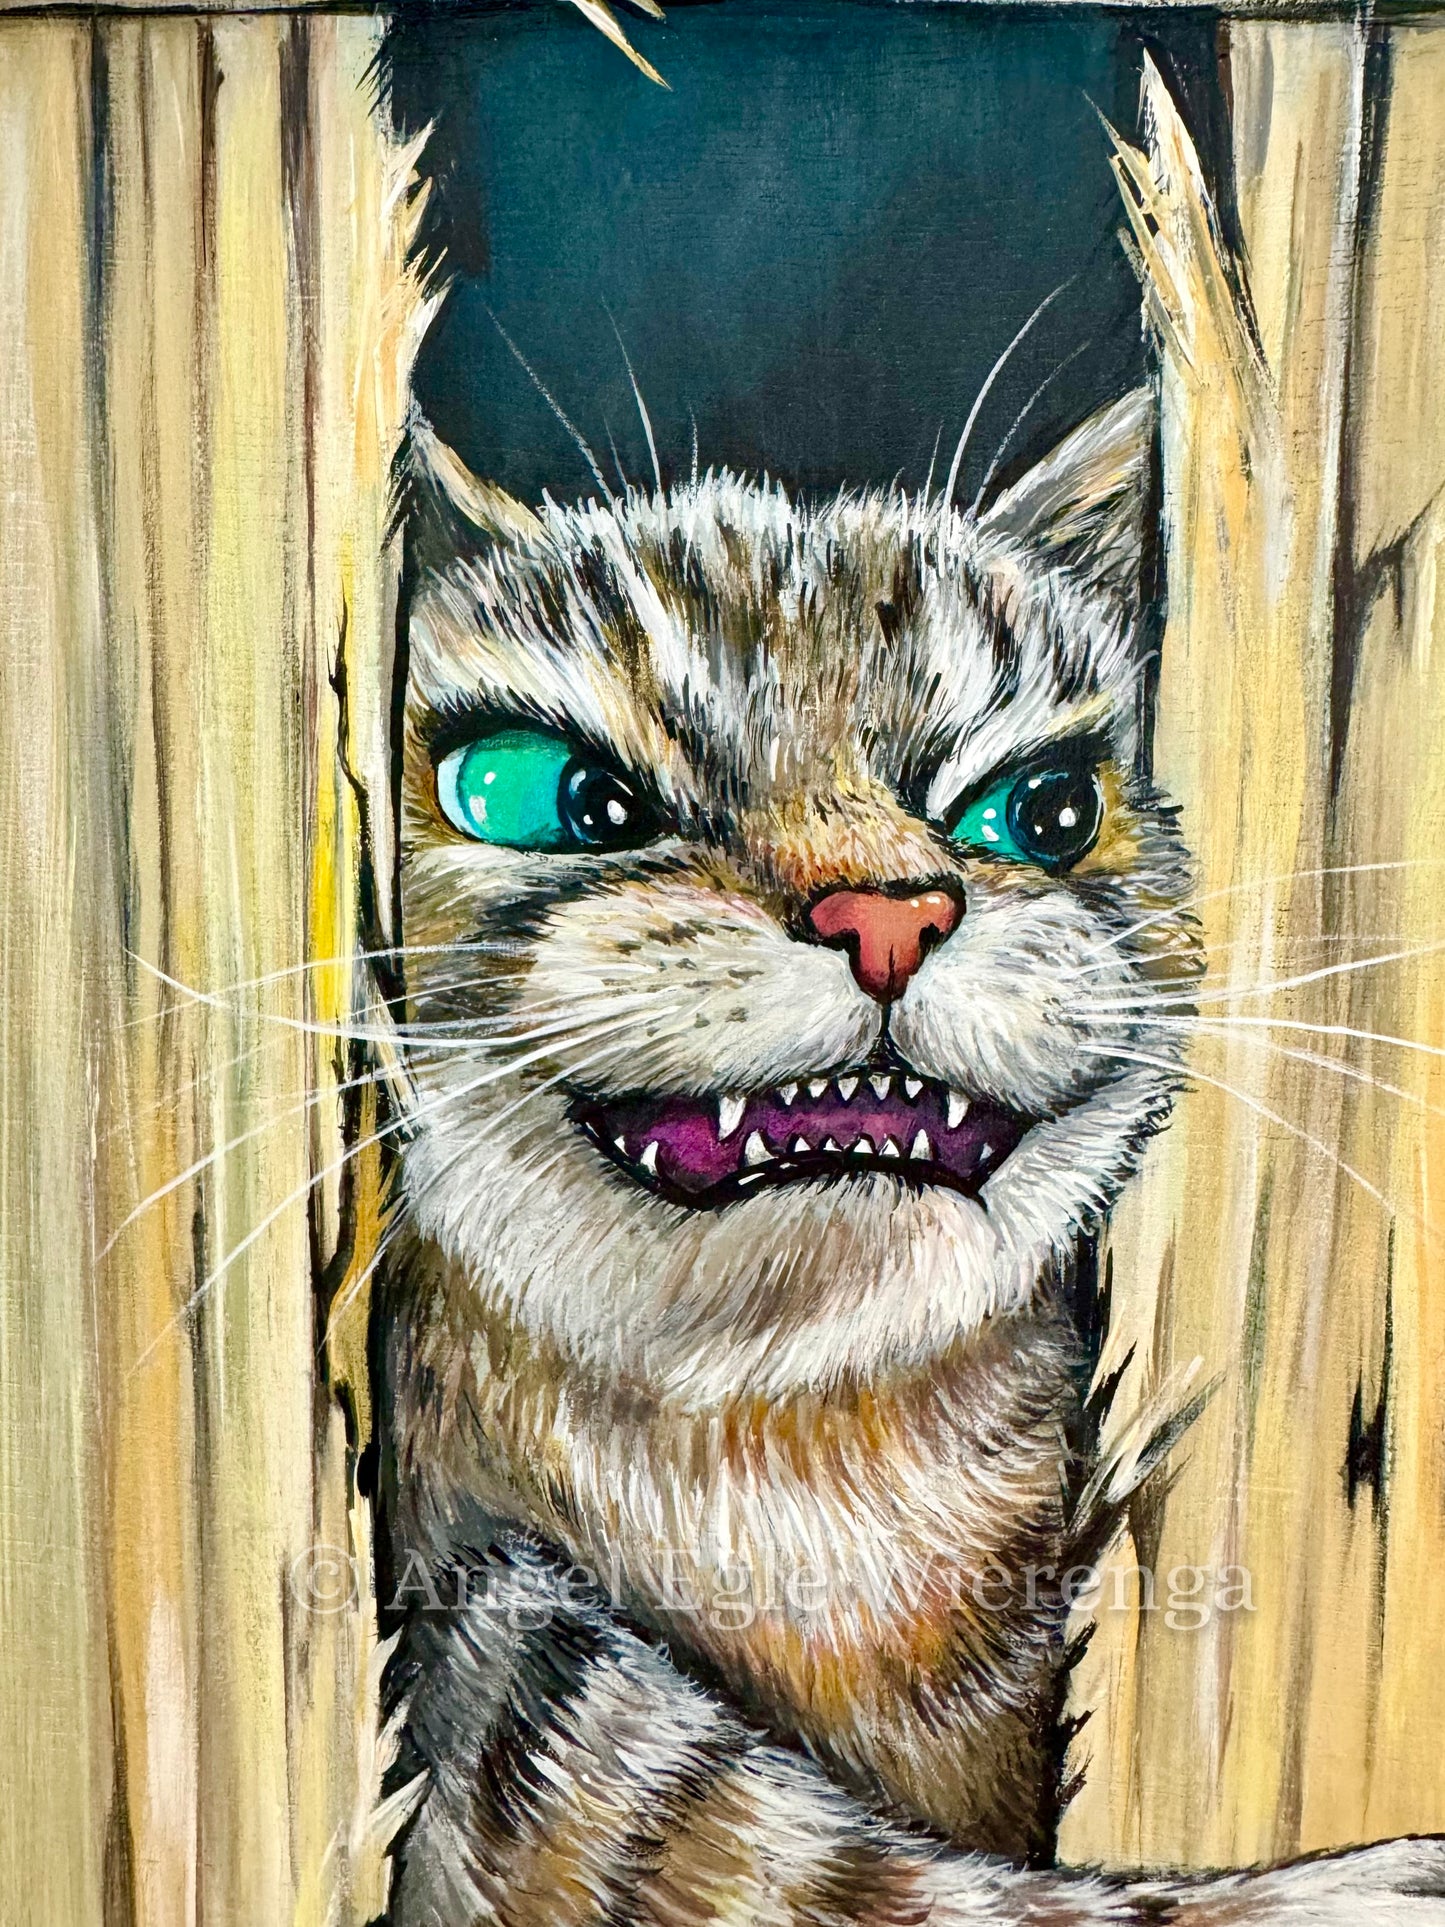 Original Painting "Here's Kitty"